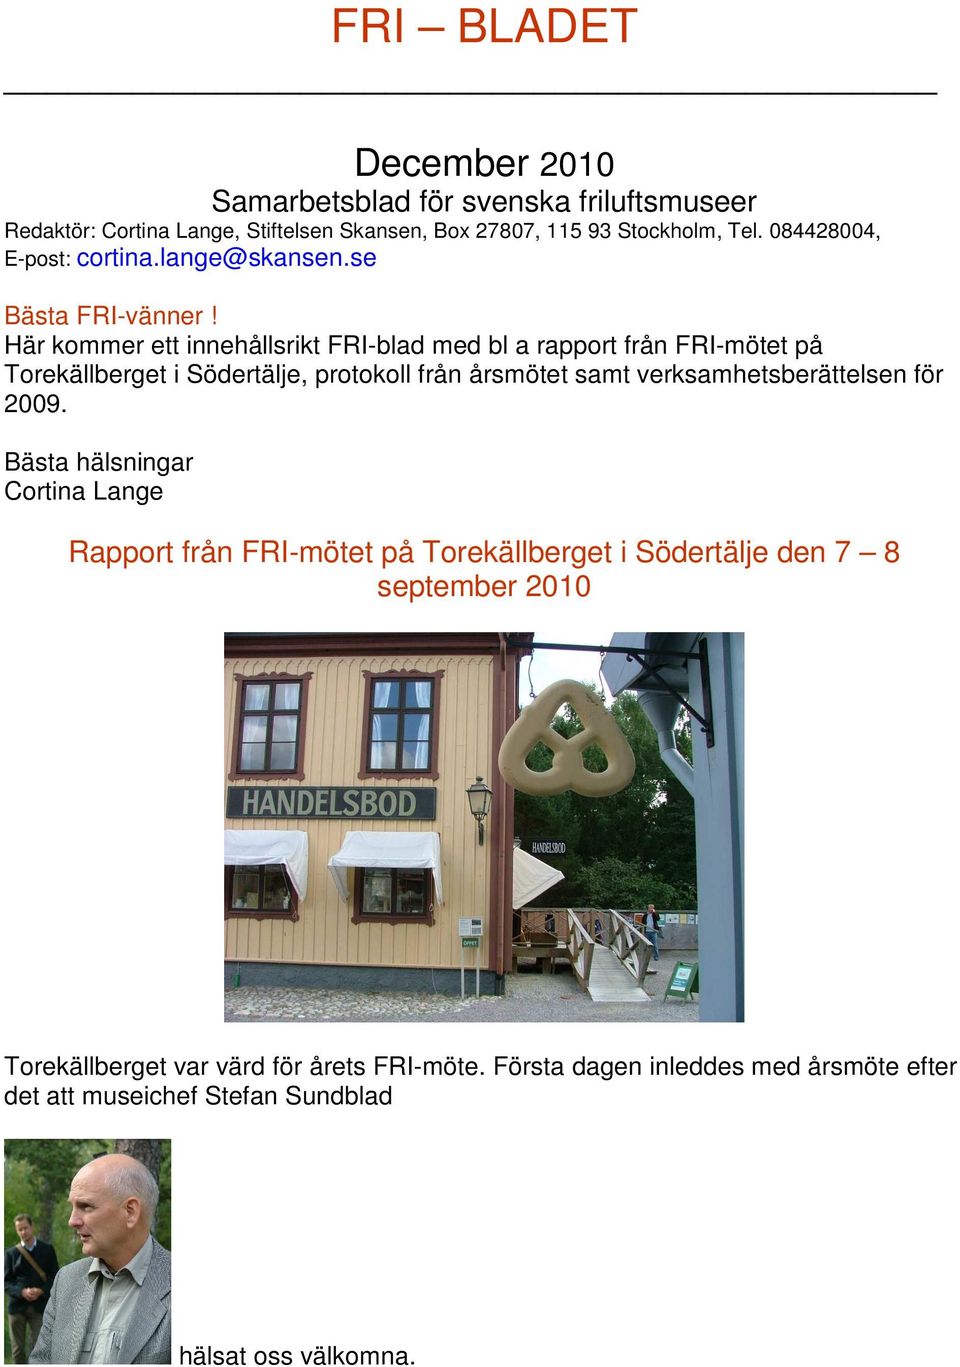 Här kommer ett innehållsrikt FRI-blad med bl a rapport från FRI-mötet på Torekällberget i Södertälje, protokoll från årsmötet samt verksamhetsberättelsen